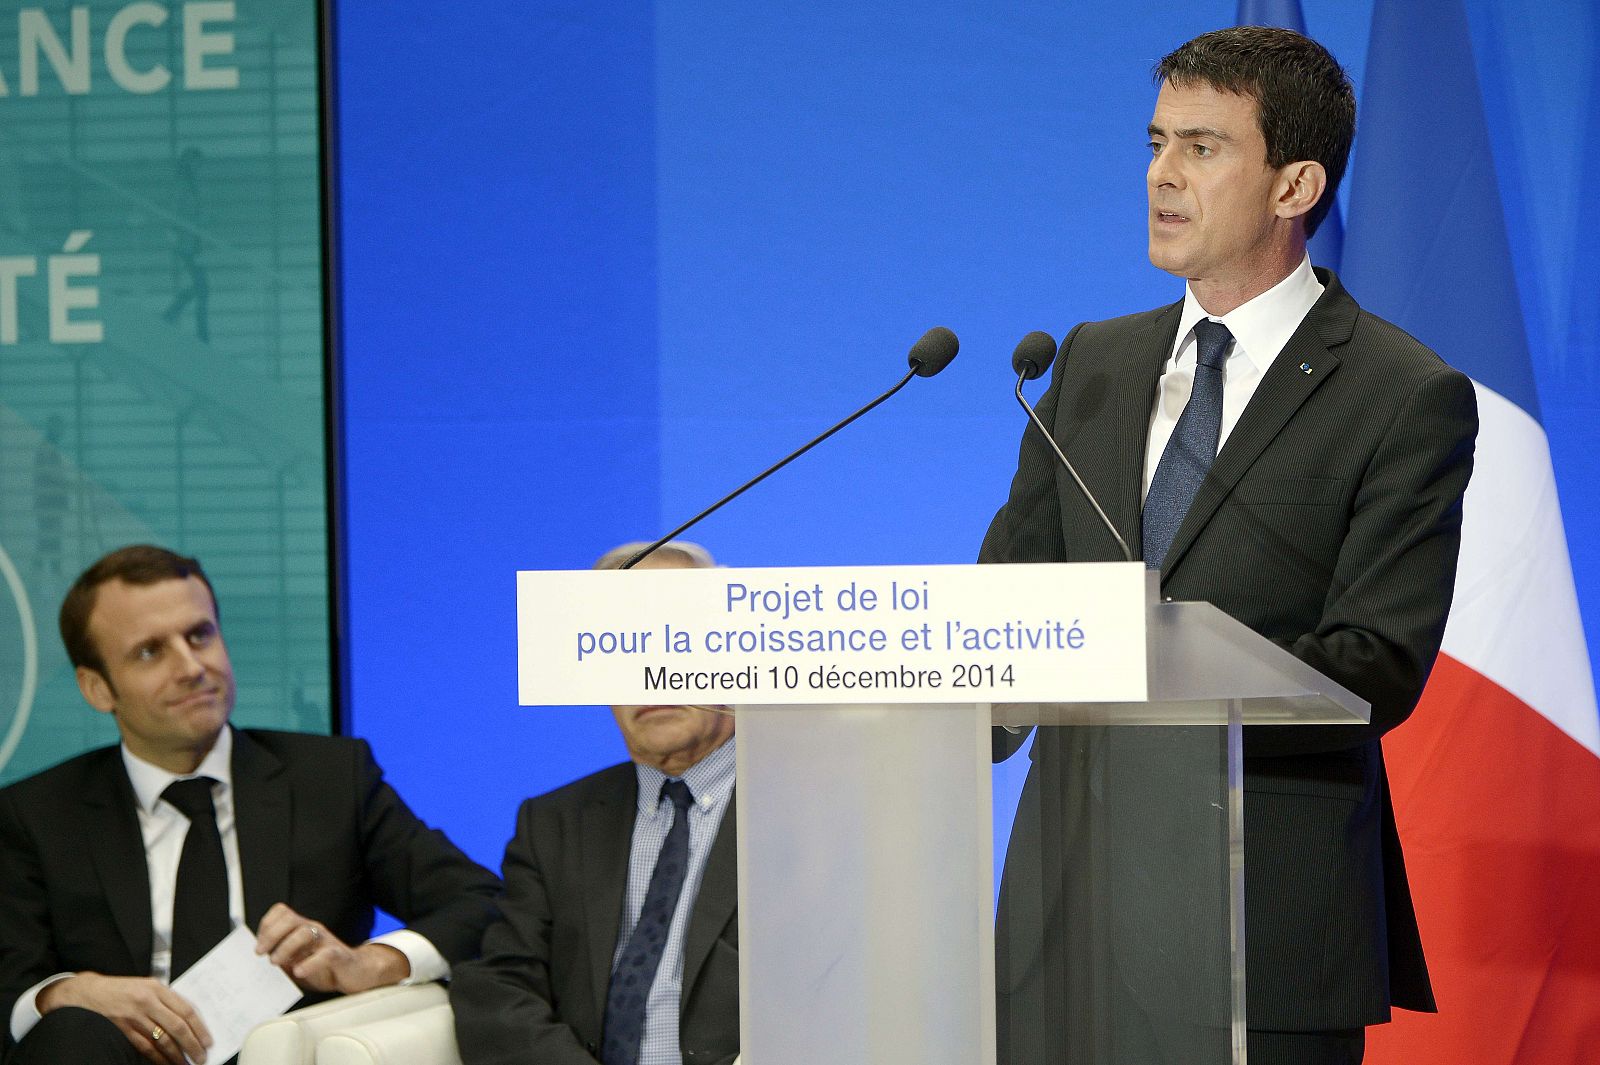 El primer ministro francés presenta el proyecto de ley para el crecimiento